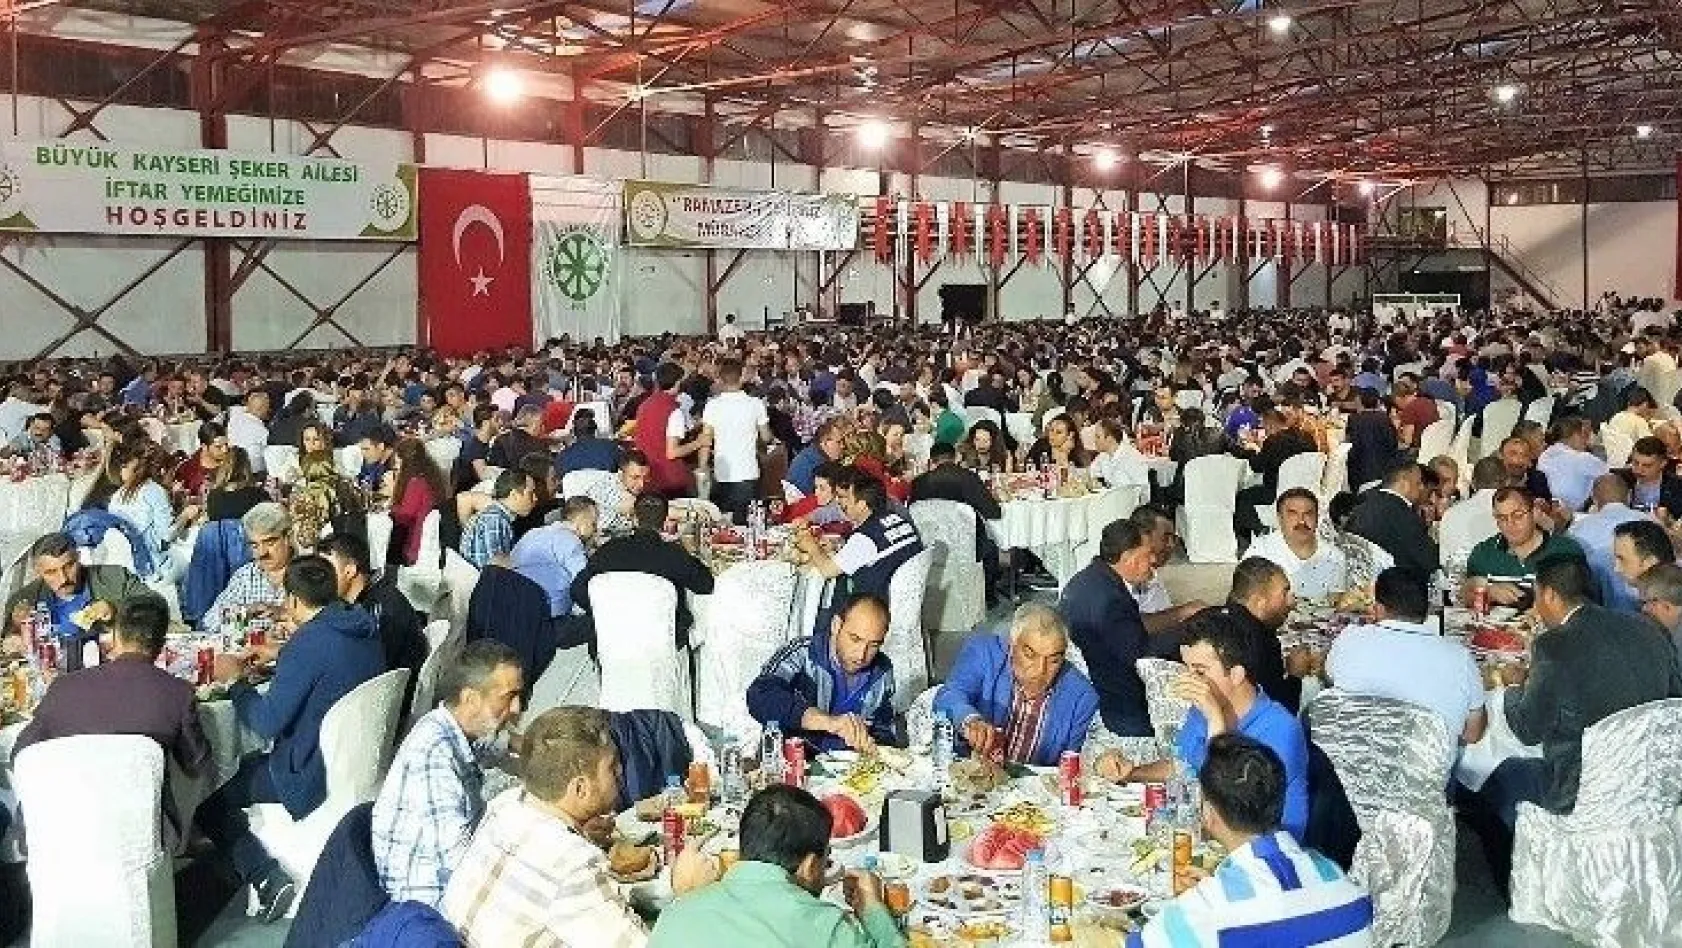 Kayseri Pancar Kooperatifi Yönetim Kurulu Başkanı Hüseyin Akay:
